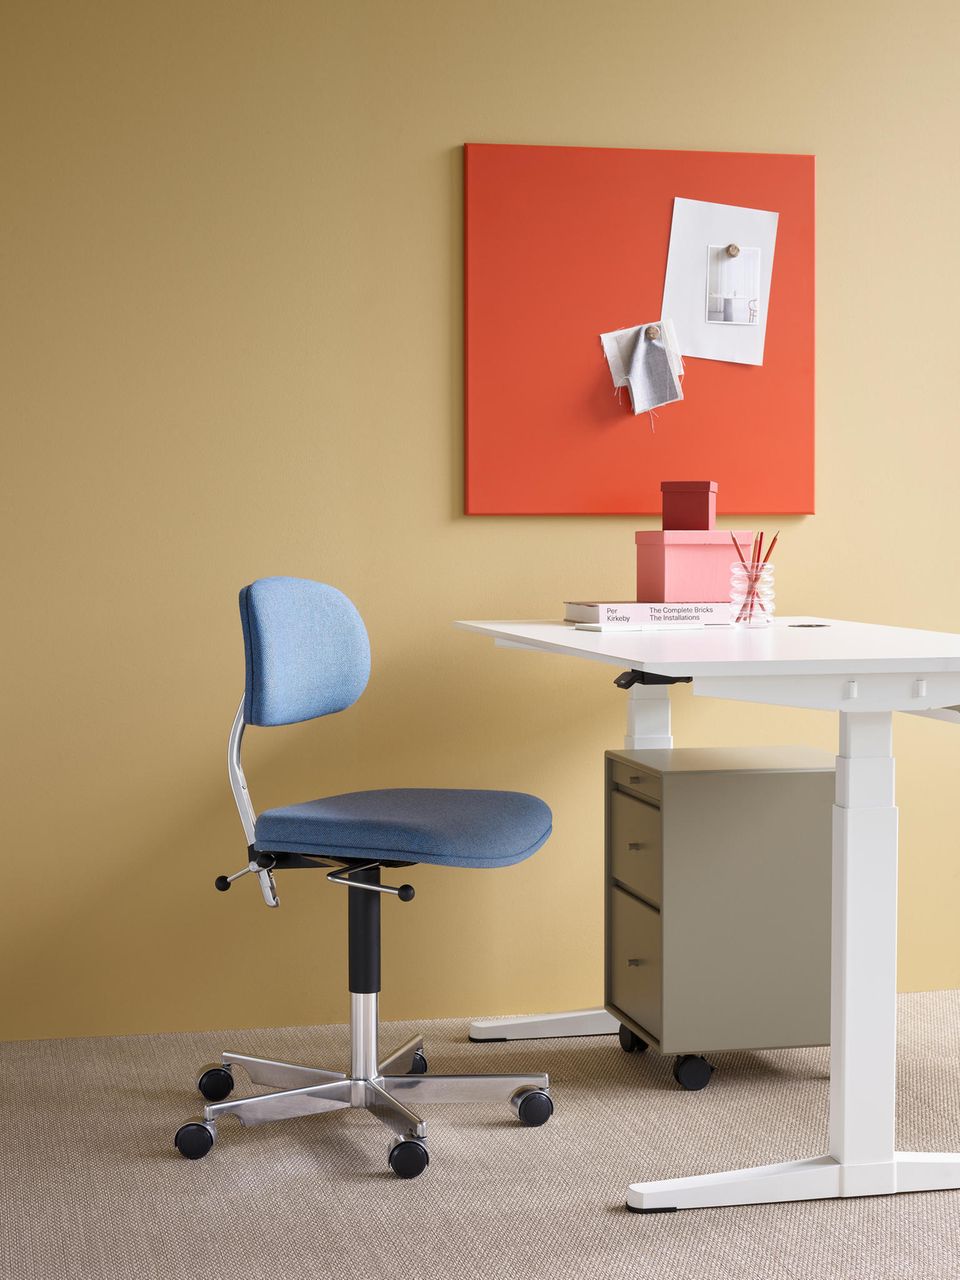 Schreibtisch und Stauraummöbel von Montana in einem Arbeitszimmer in Orange, Gelb, Weiß und Blau